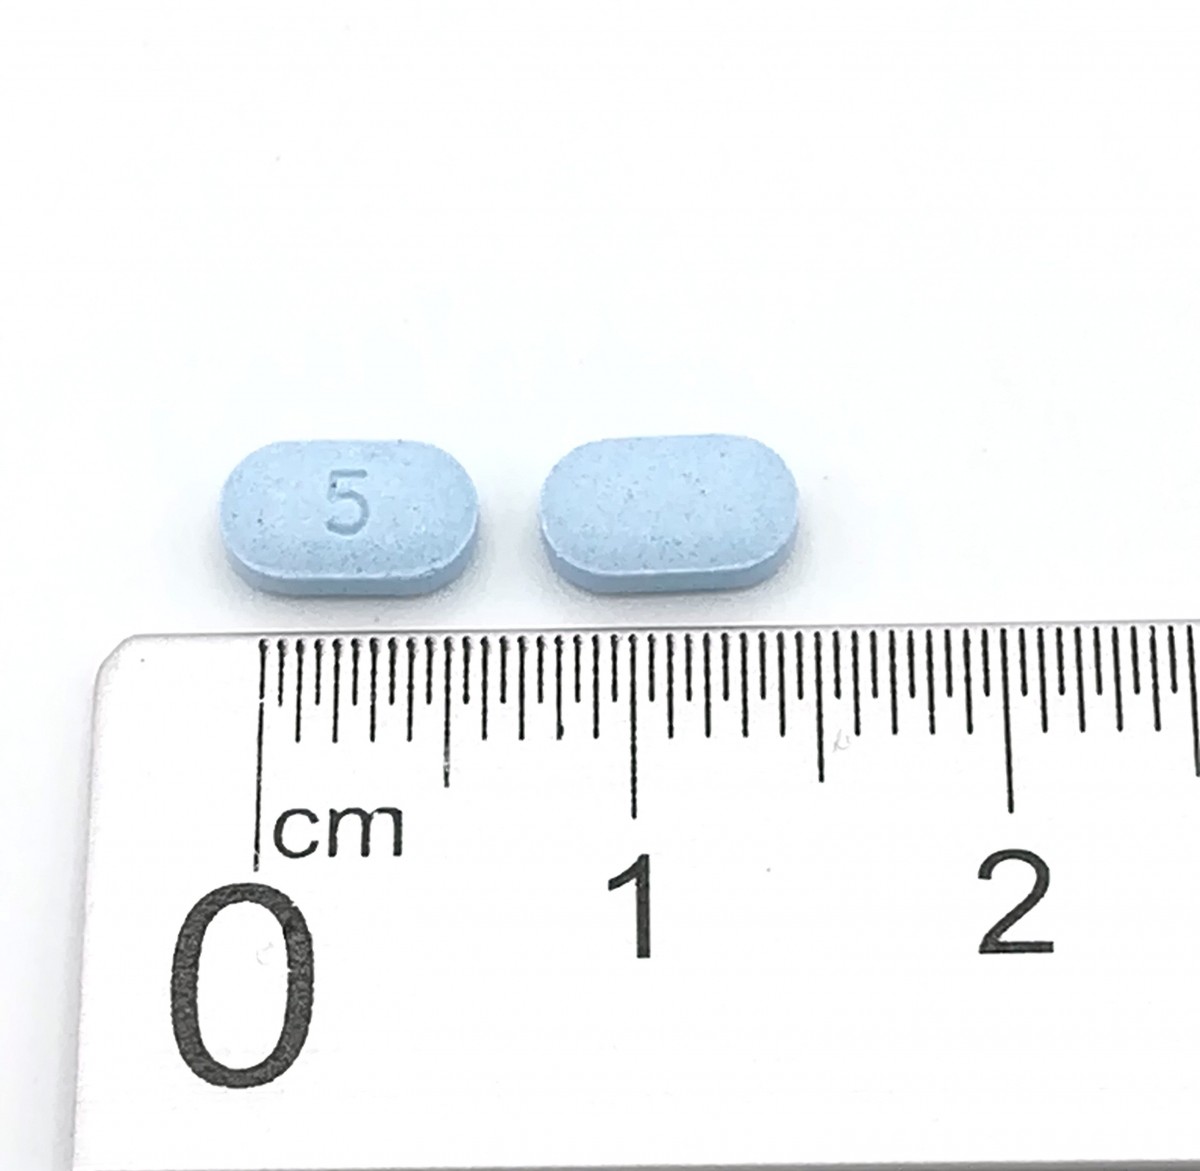 ARIPIPRAZOL NORMON 5 MG COMPRIMIDOS EFG , 100 comprimidos fotografía de la forma farmacéutica.